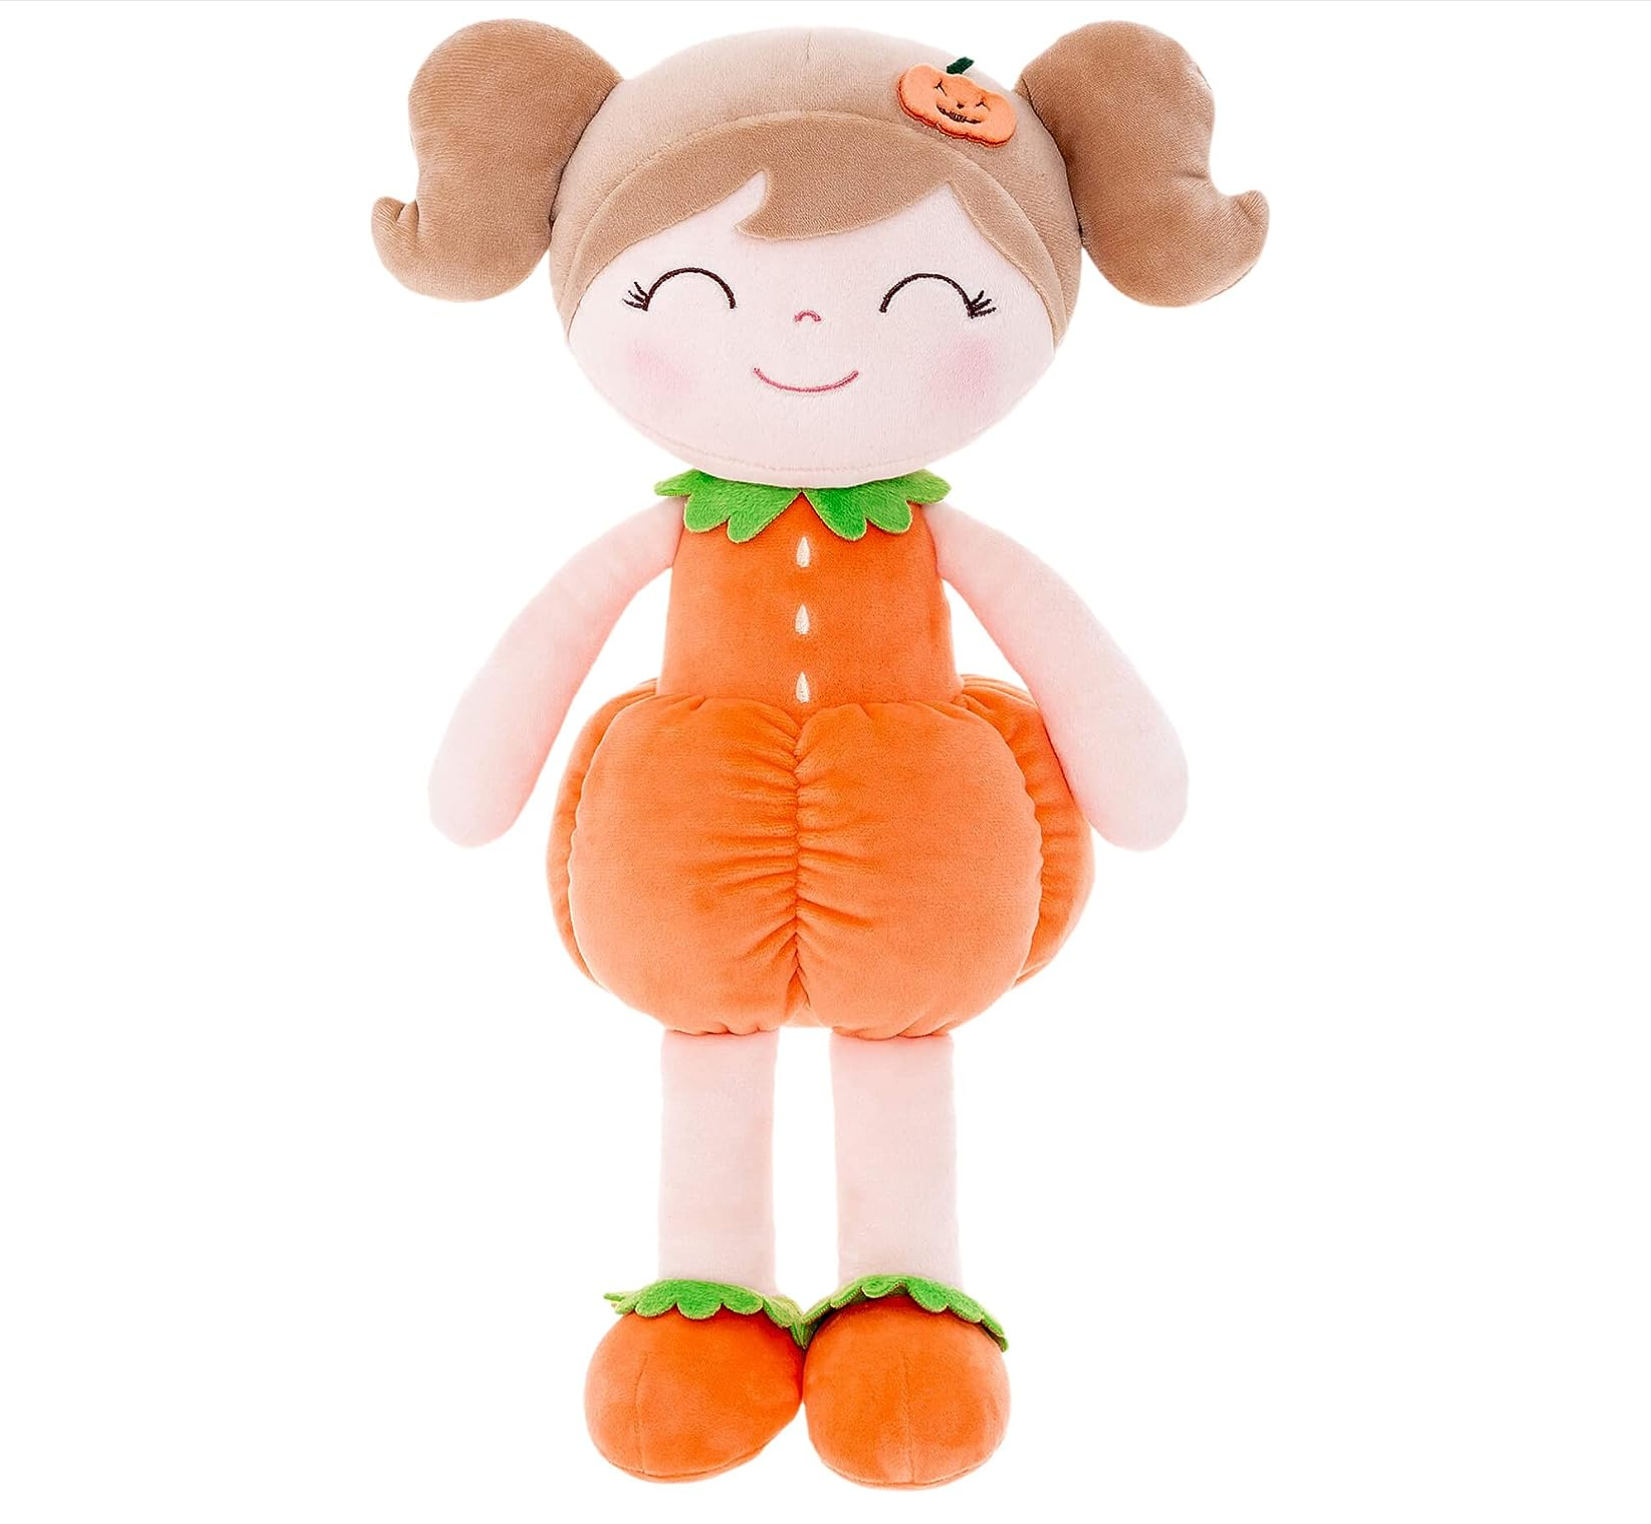 doll plush toys wholesaler, doll plush toys china, doll plush toys customize, doll plush toys oem, doll plush toys odm